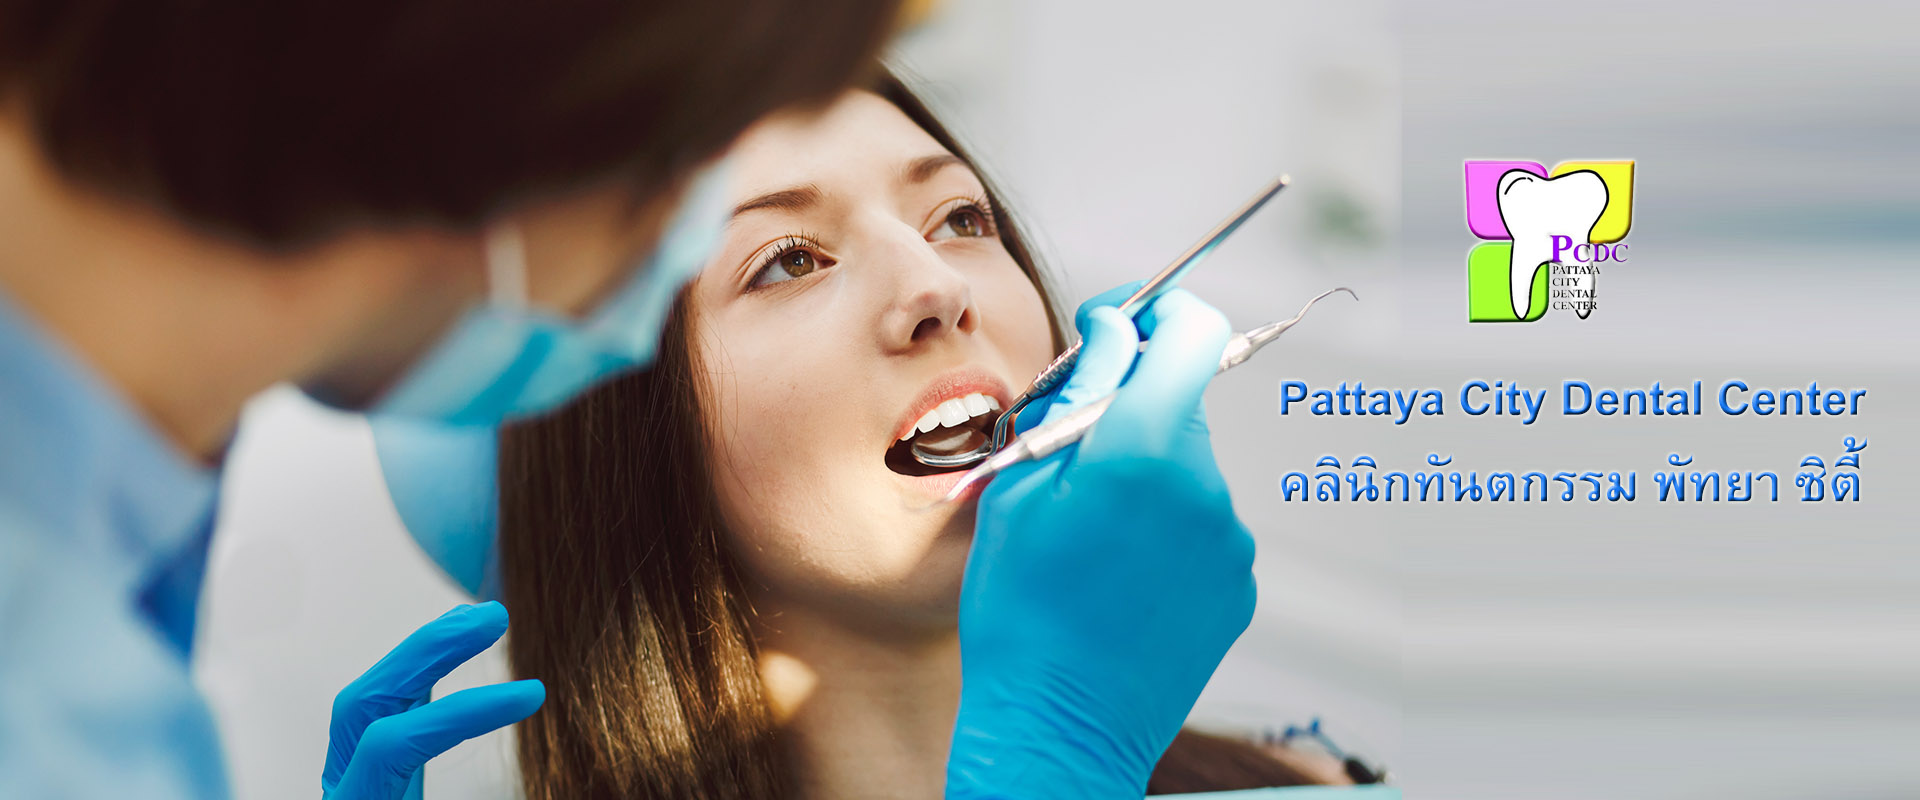 คลินิกทันตกรรม พัทยา, Pattaya City Dental Center, รับทำฟัน, จัดฟัน, ขูดหินปูน, ขัดฟัน, ฟอกฟันขาว